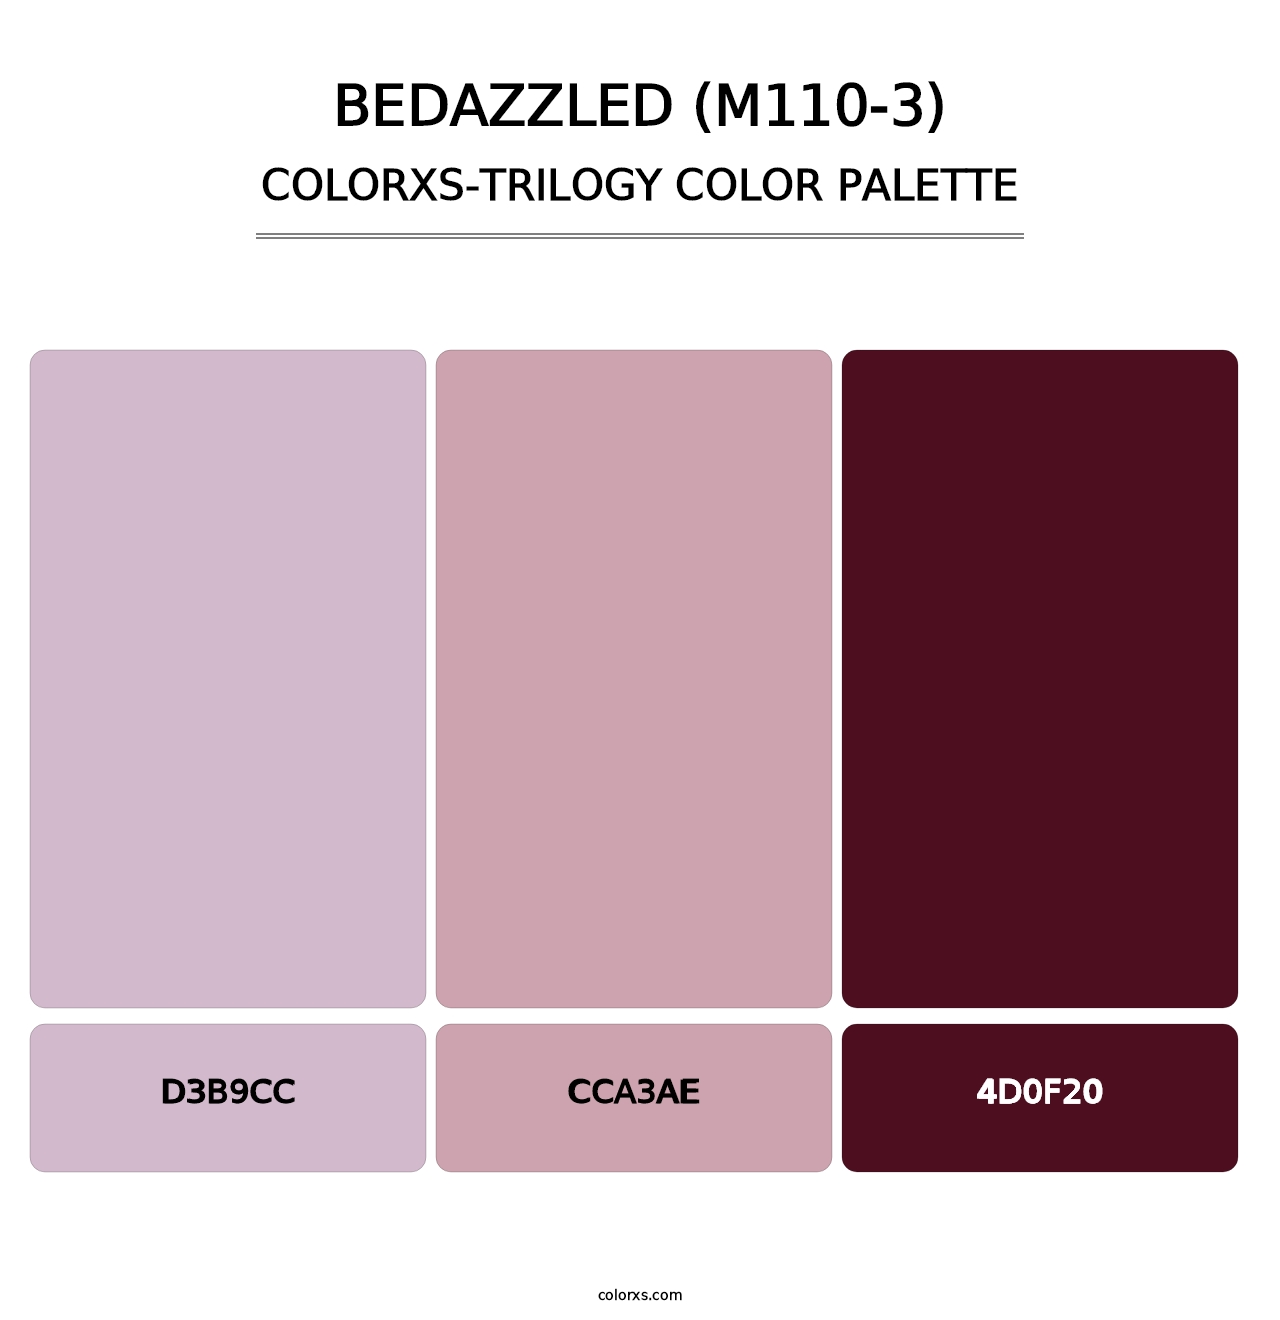 Bedazzled (M110-3) - Colorxs Trilogy Palette